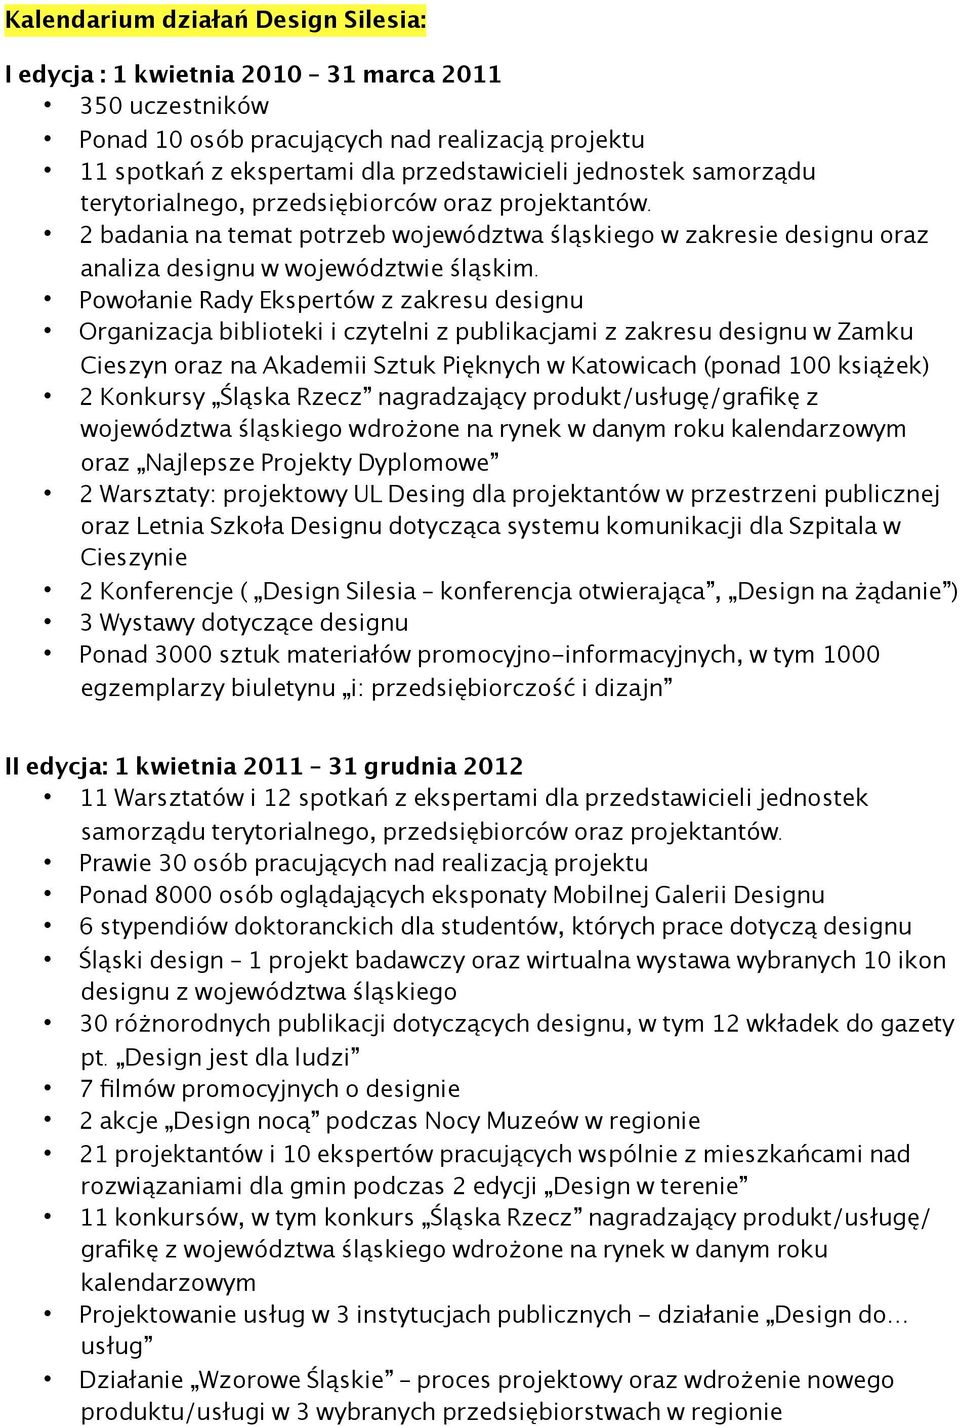 Powołanie Rady Ekspertów z zakresu designu Organizacja biblioteki i czytelni z publikacjami z zakresu designu w Zamku Cieszyn oraz na Akademii Sztuk Pięknych w Katowicach (ponad 100 książek) 2